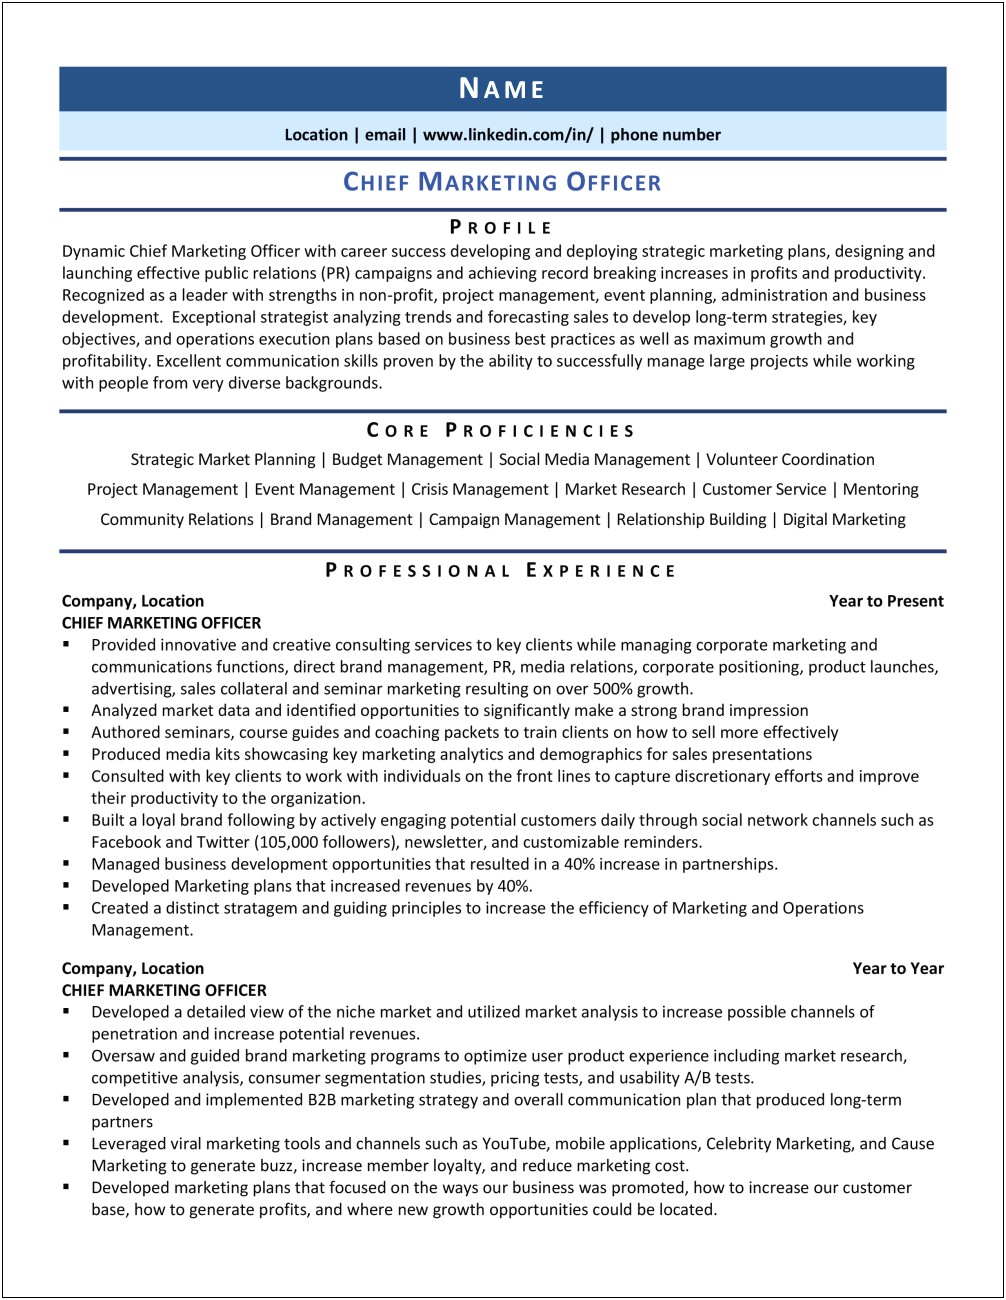 Chief Marketing Officer Job Description Resume